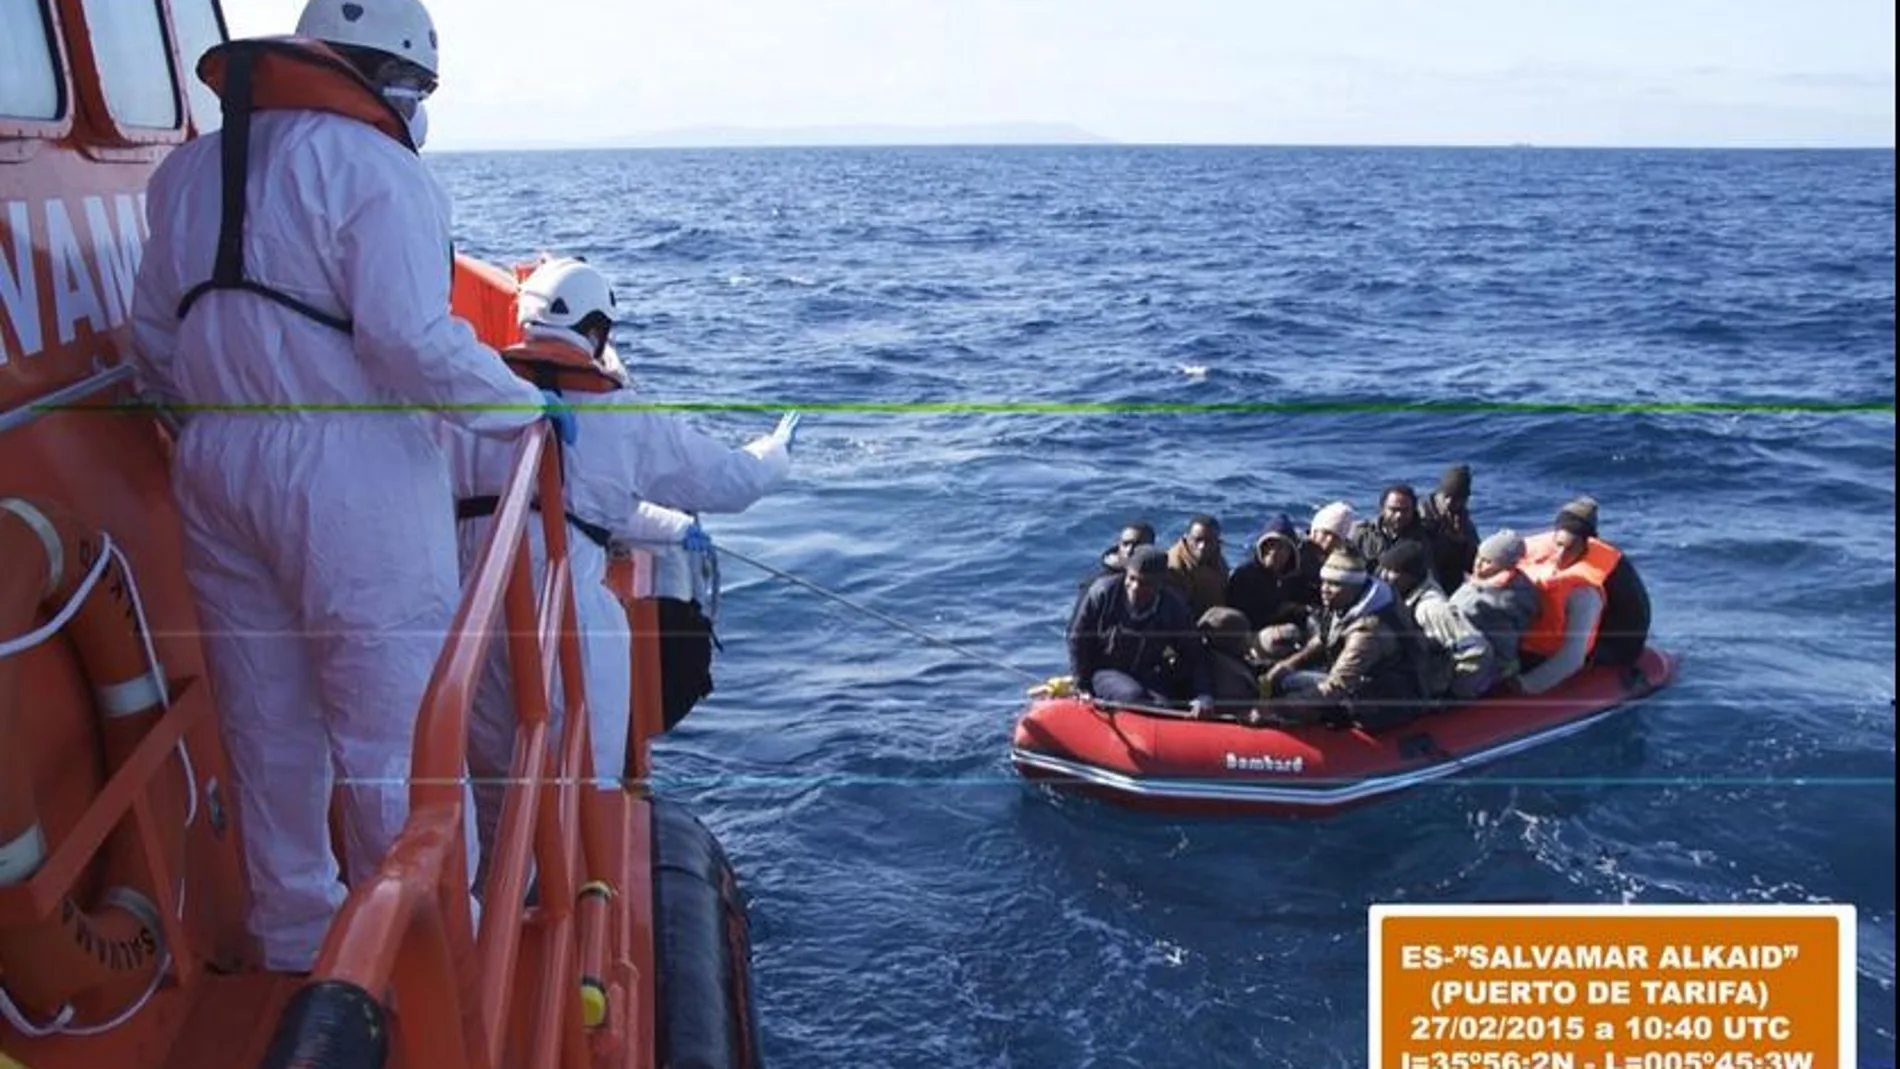 Imagen de la patera rescatada esta mañana en el Estrecho con 22 ocupantes, todos varones